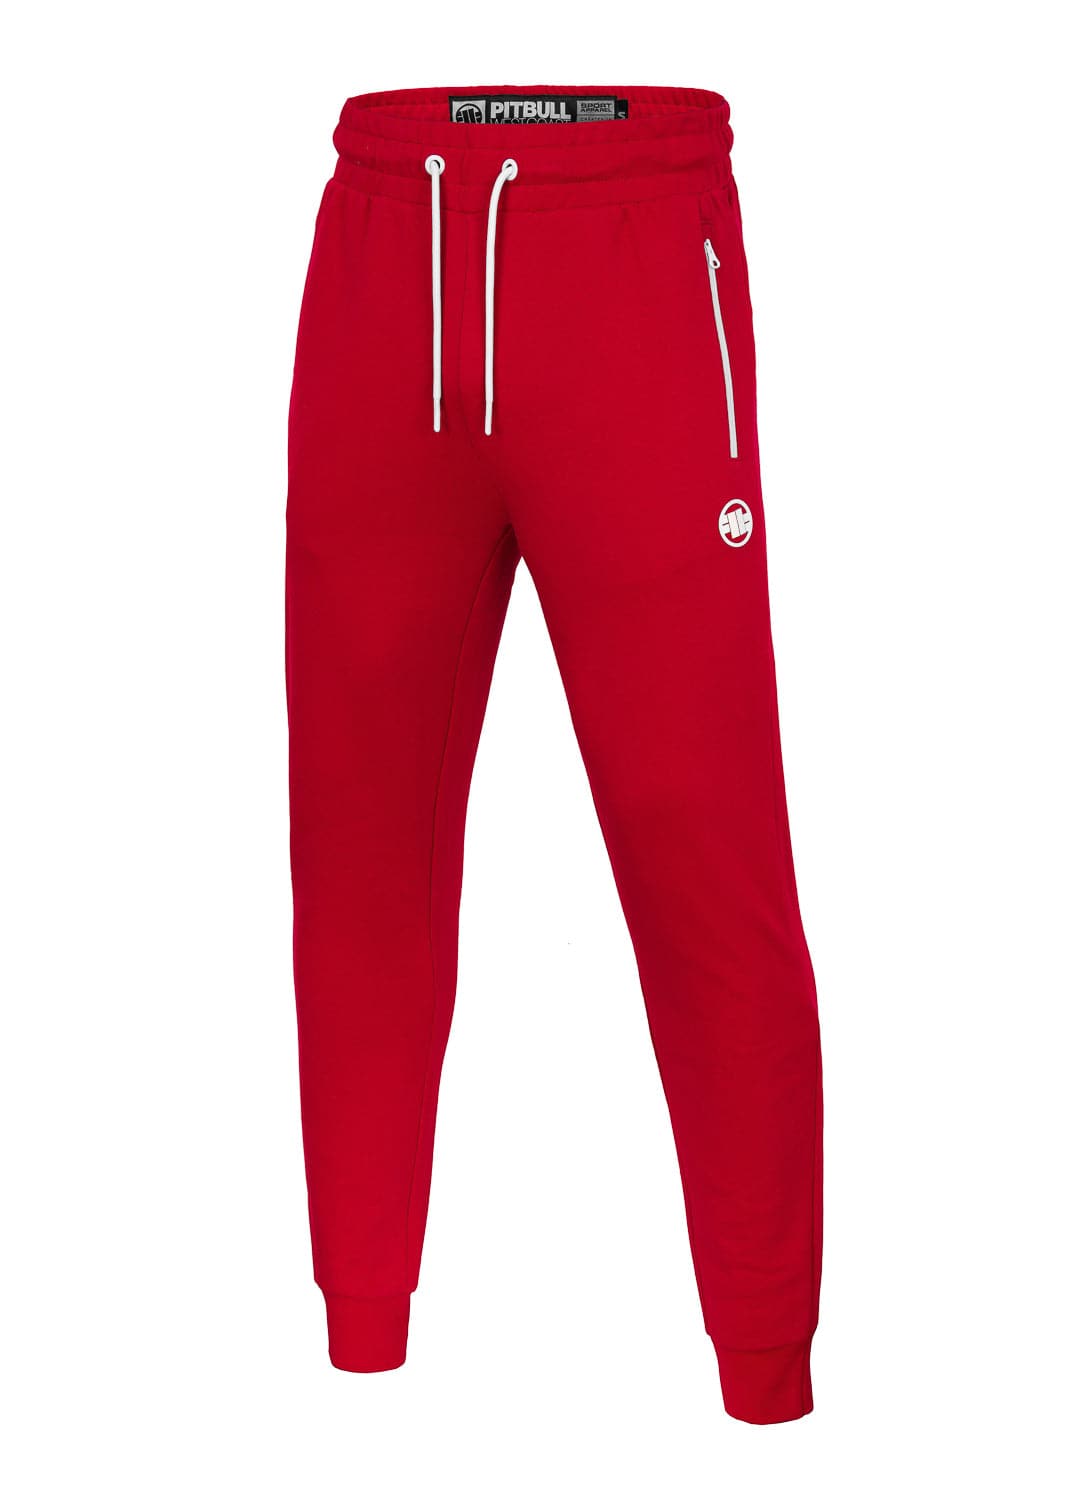 Spodnie Dresowe TERRY NEW LOGO Czerwone - Pitbull West Coast International Store 